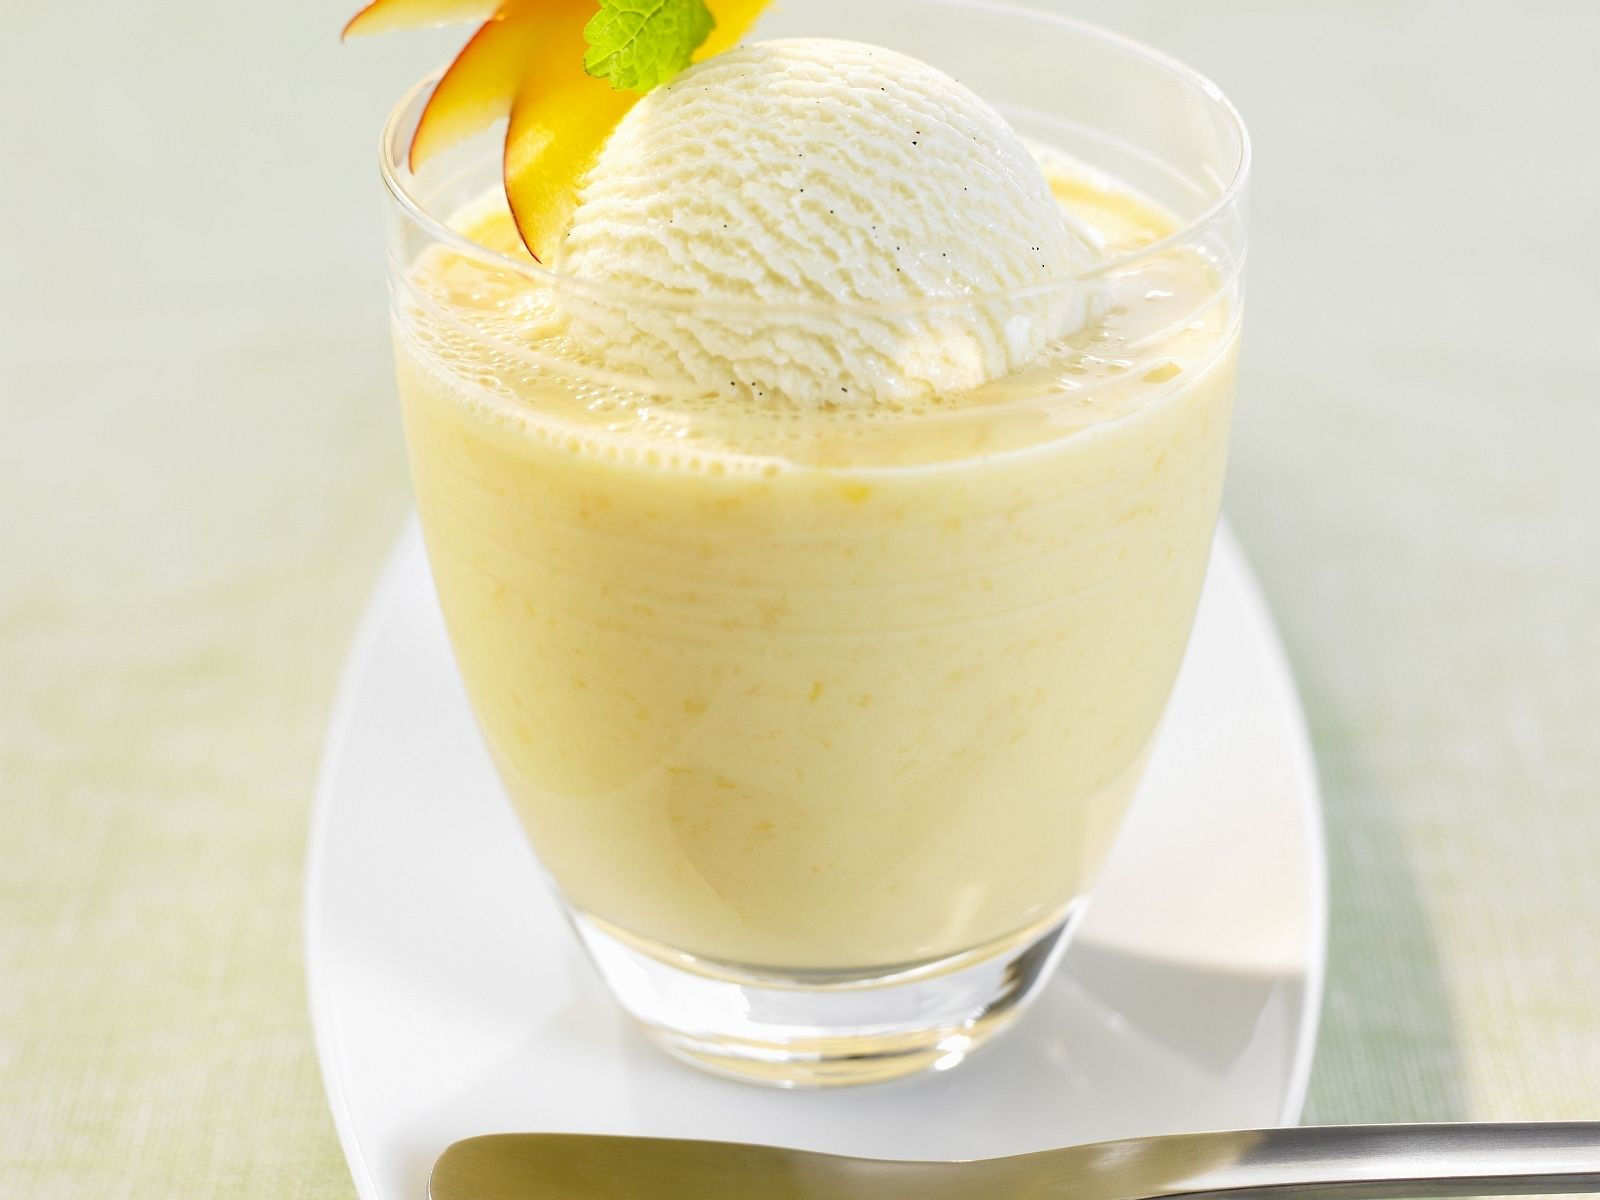 mango shake with ice cream.jpg